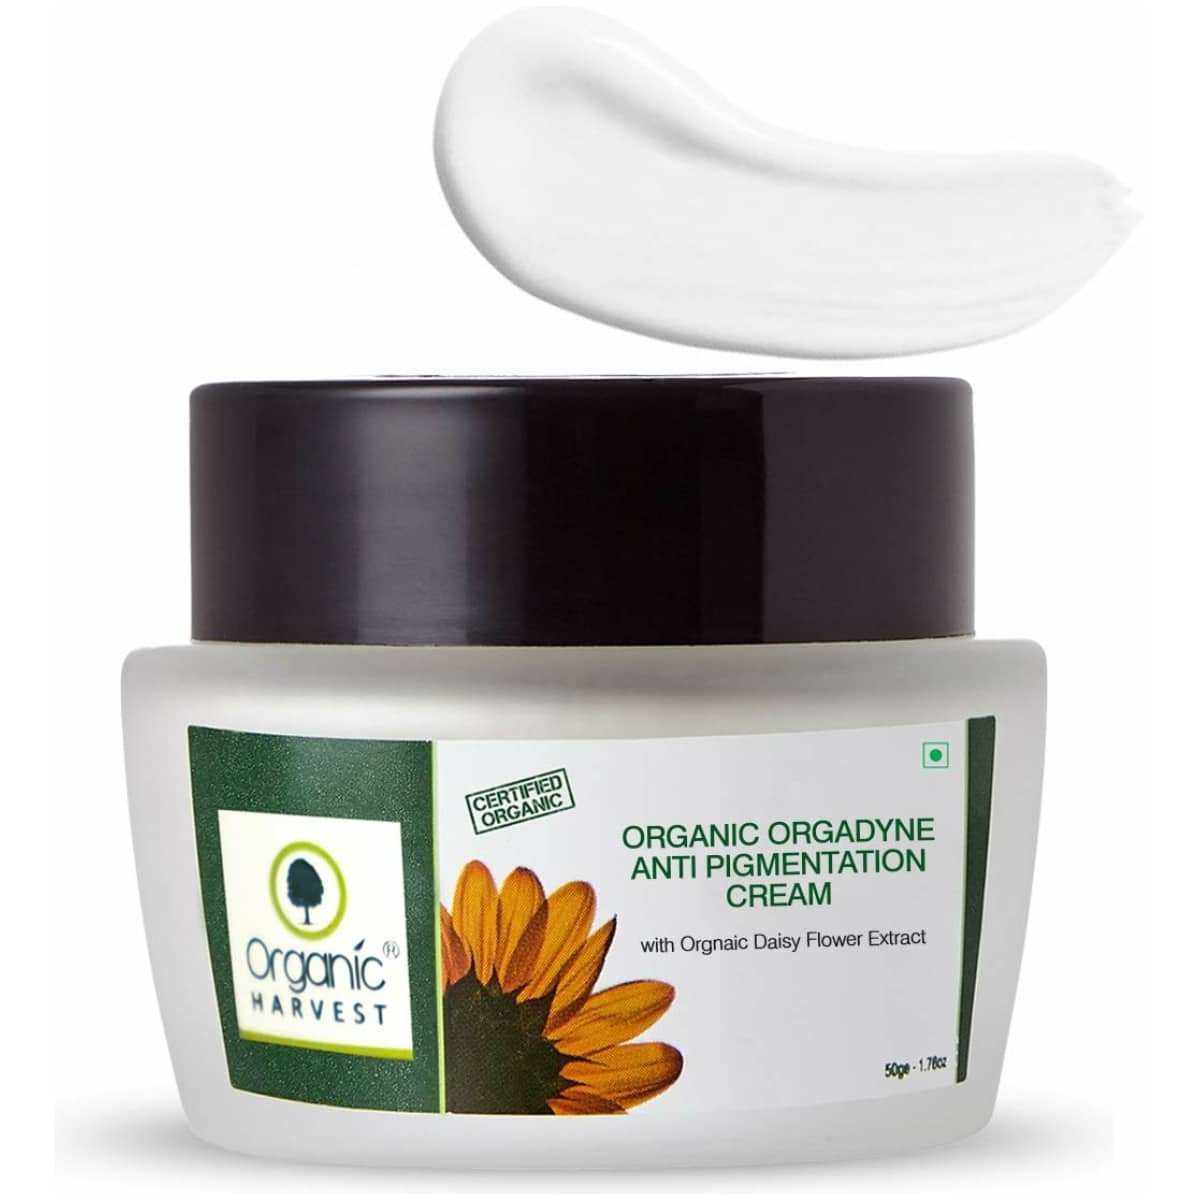 Organic Harvest Anti-Pigmentation Cream 15 G